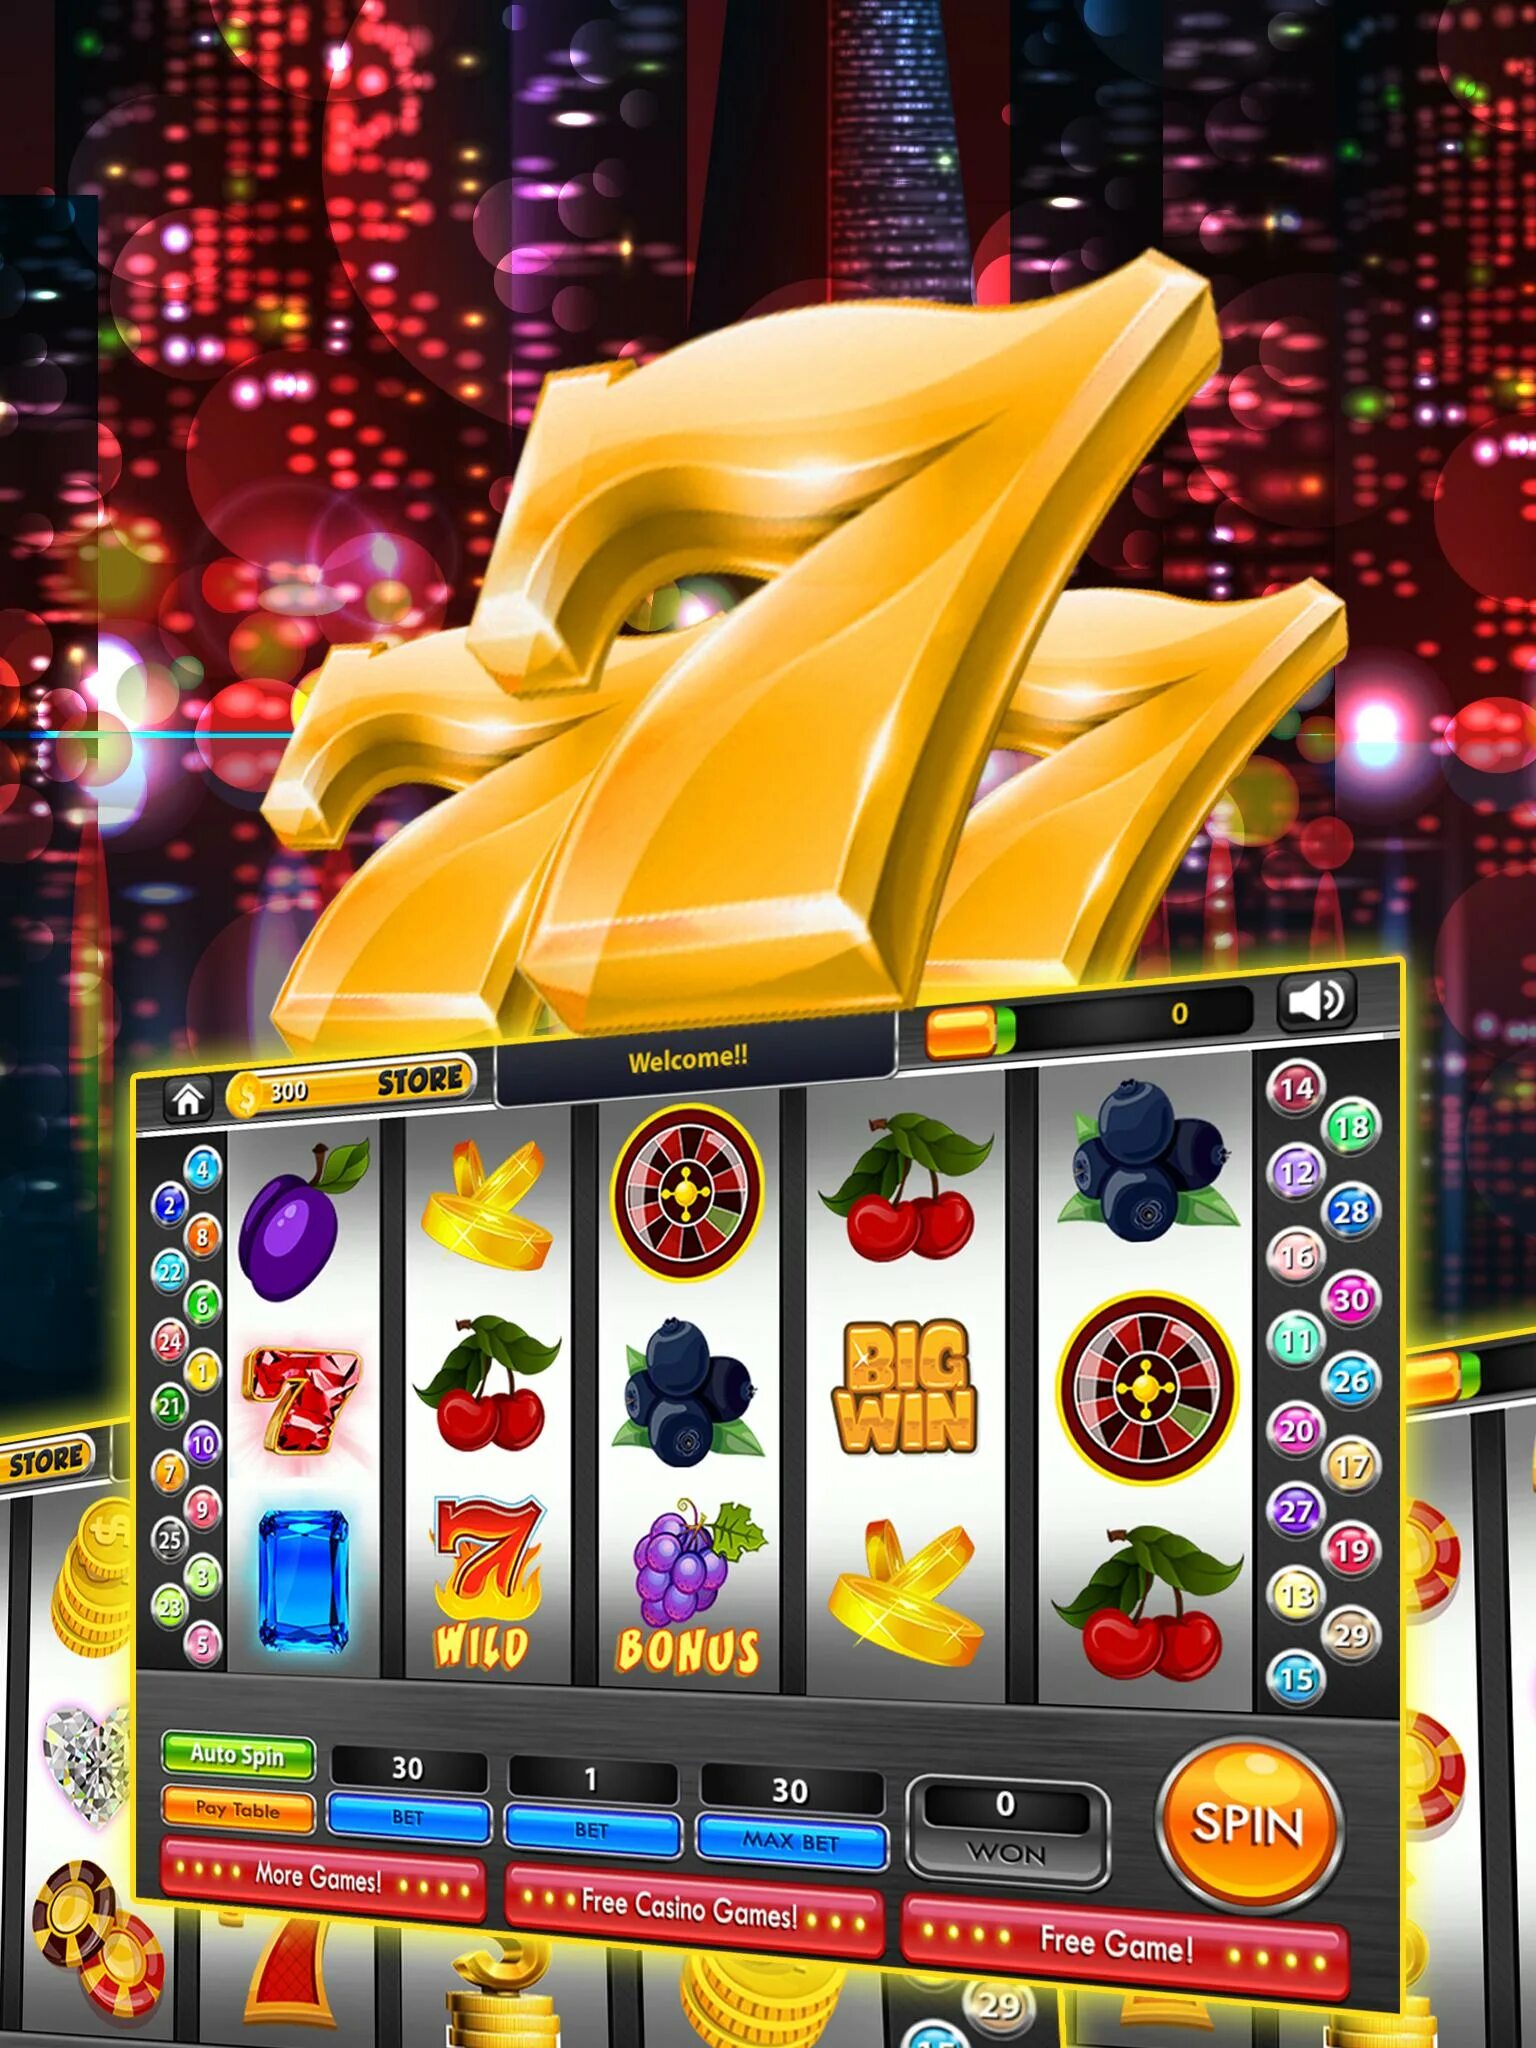 Игровые автоматы слоты 777. 777 Слотс автоматы казино интернет. Игрушка игровой автомат казино. Игровые автоматы на реальные деньги. Игровые автоматы игровой клуб 777